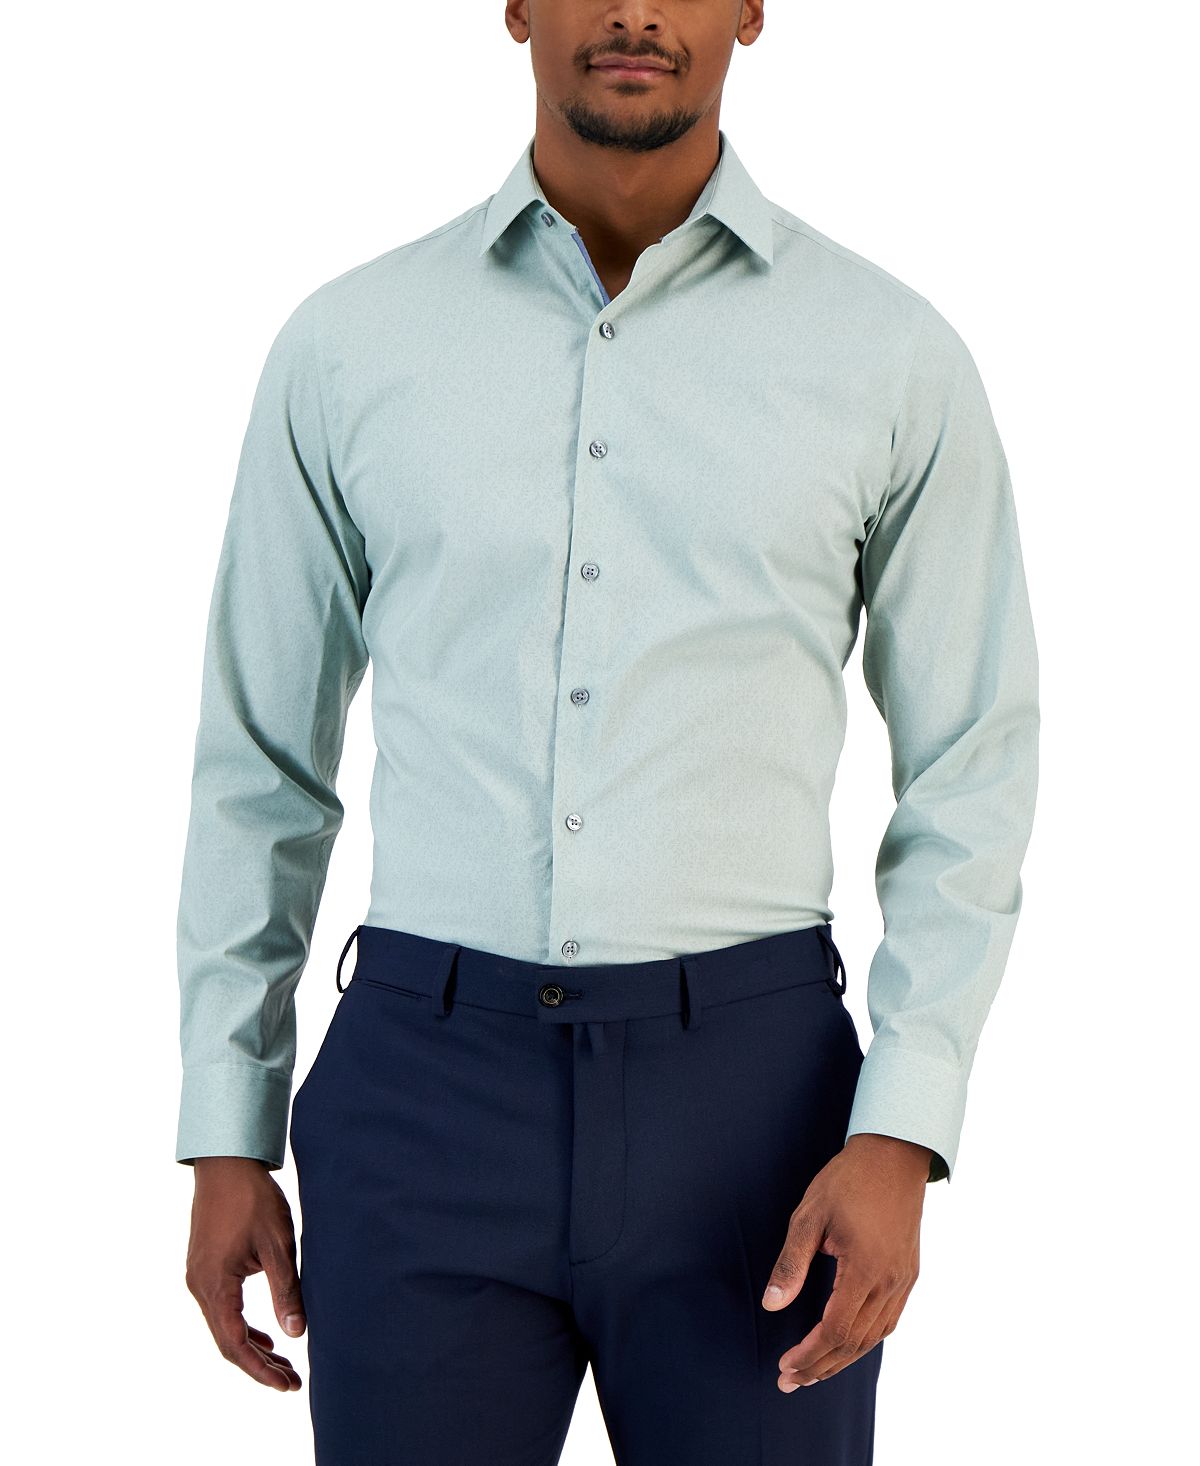 цена Мужская классическая рубашка узкого кроя с принтом виноградной лозы Bar III